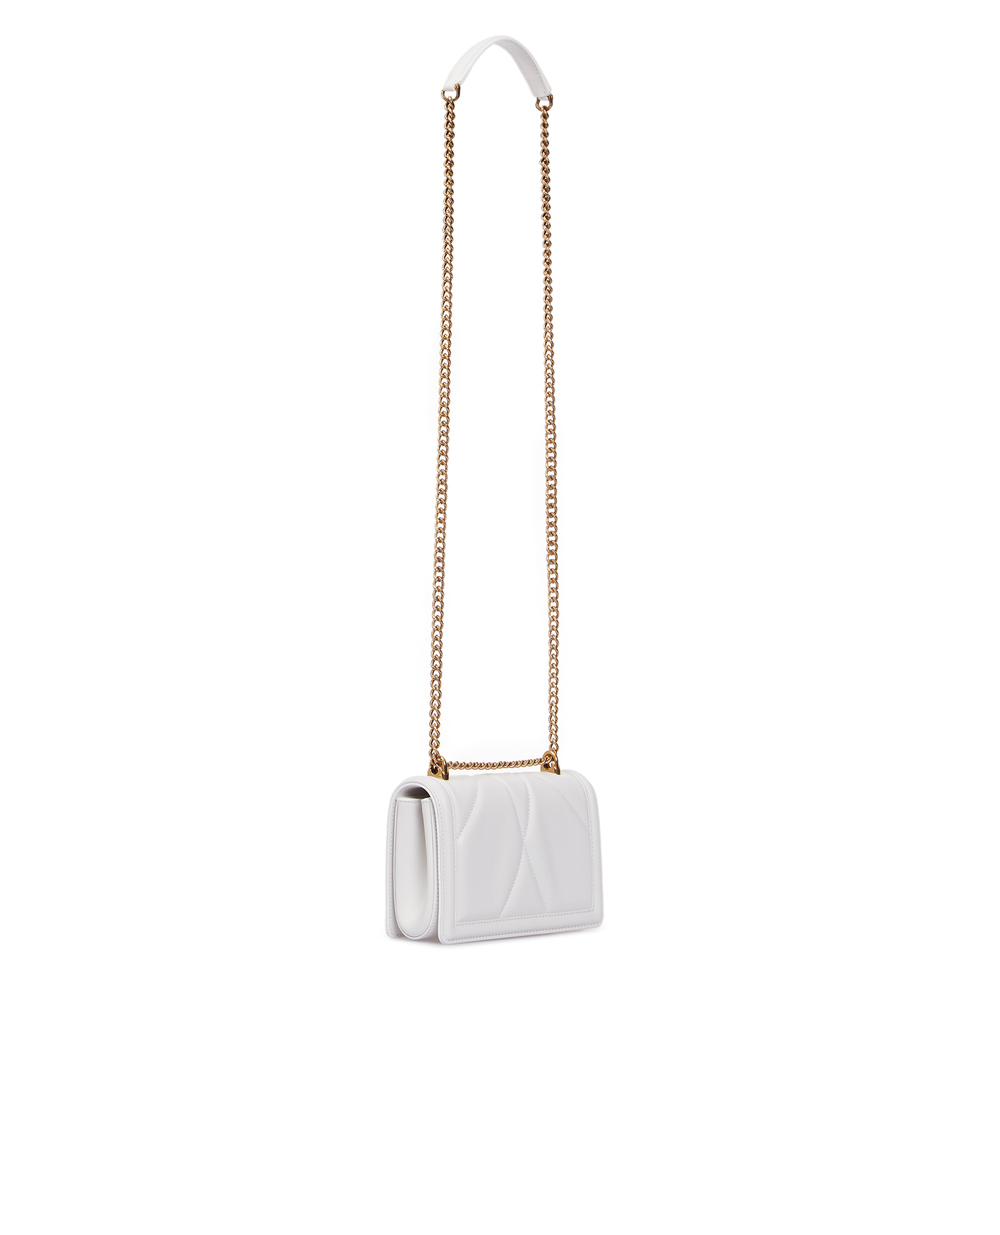 Кожаная сумка Devotion mini Dolce&Gabbana BB6880-AV967, белый цвет • Купить в интернет-магазине Kameron